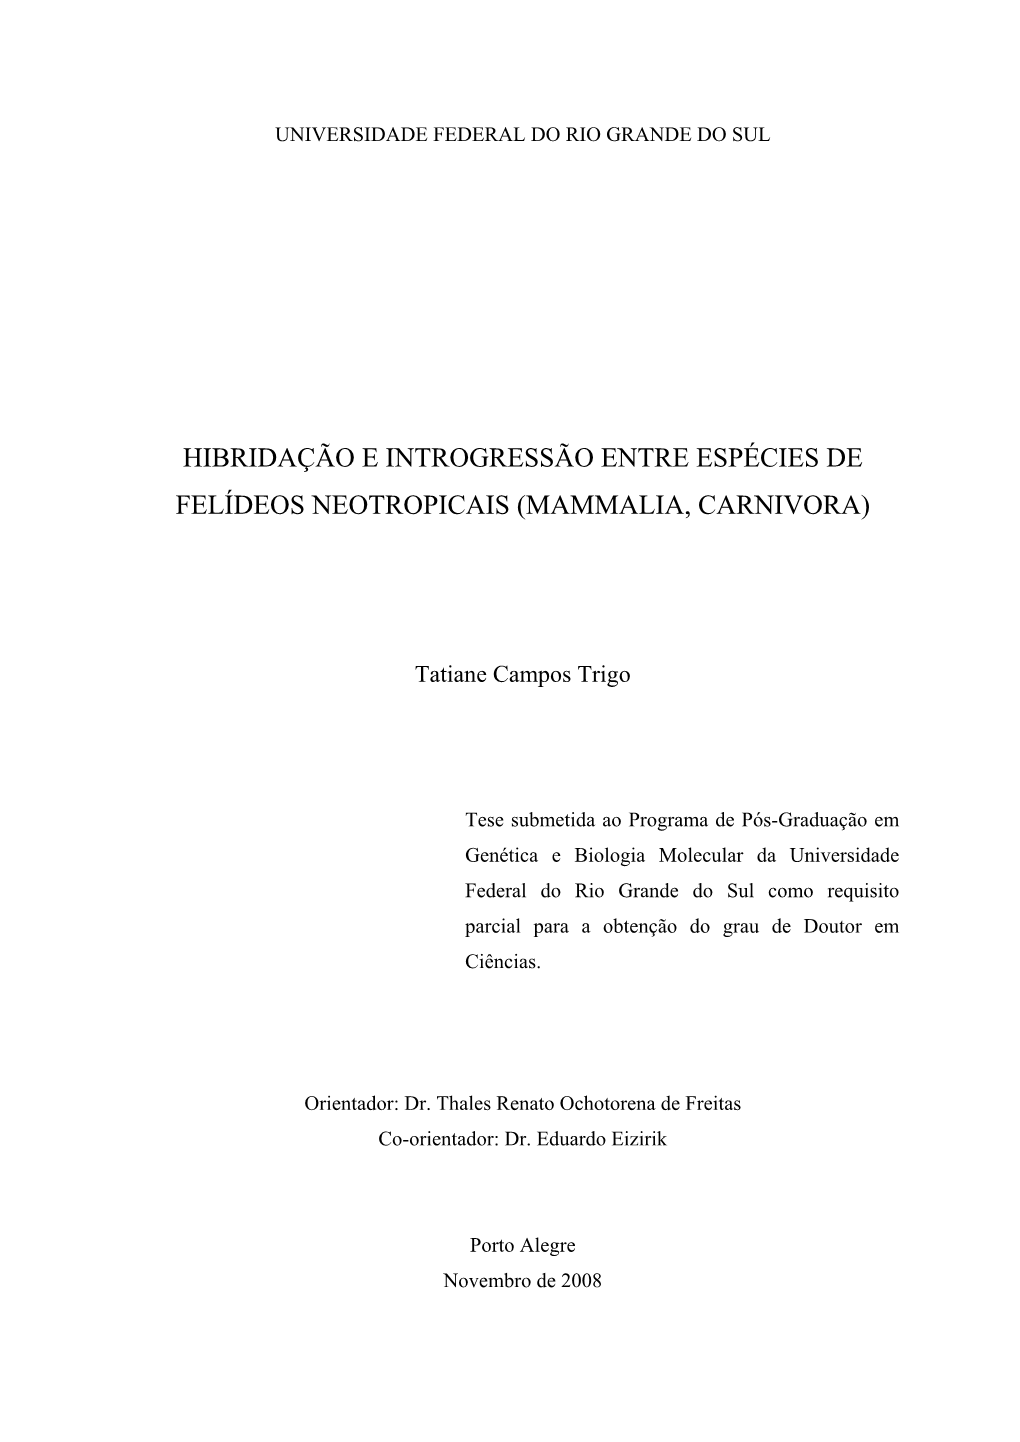 Hibridação E Introgressão Entre Espécies De Felídeos Neotropicais (Mammalia, Carnivora)